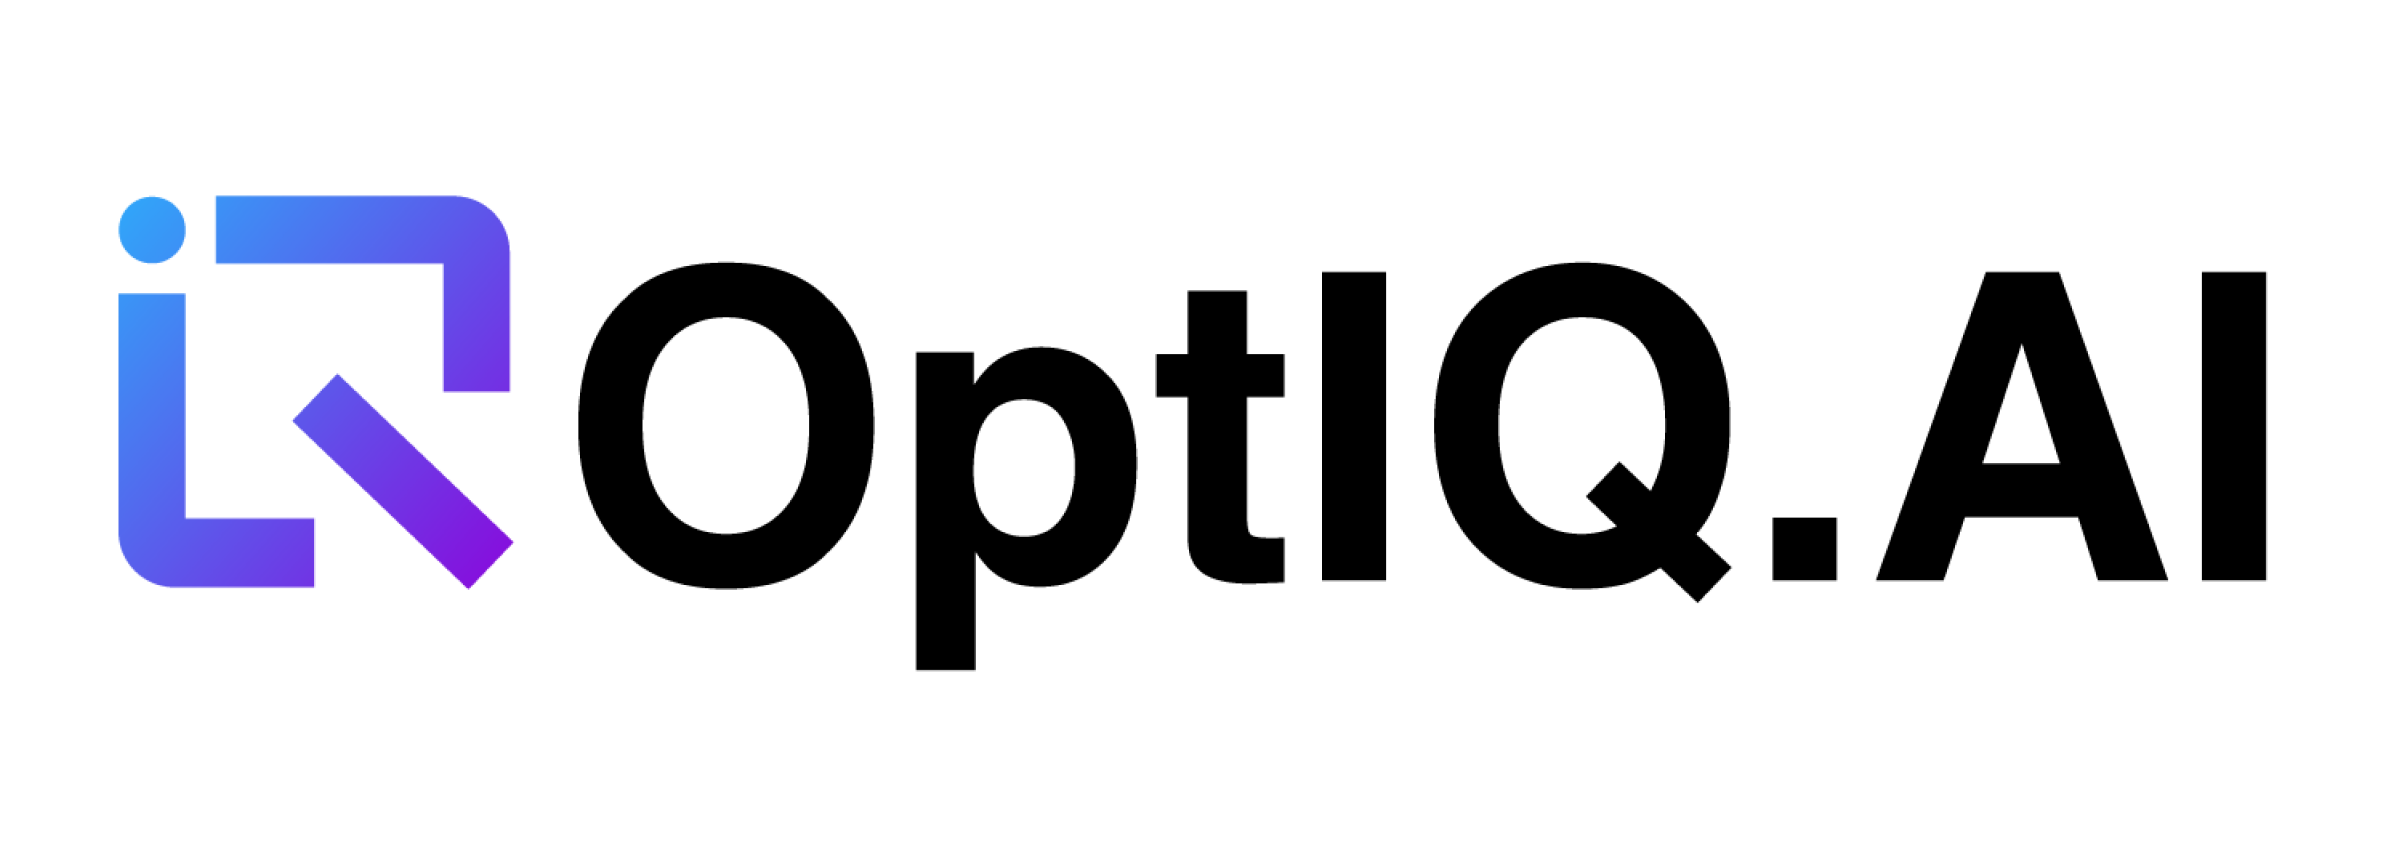 OptIQ logo